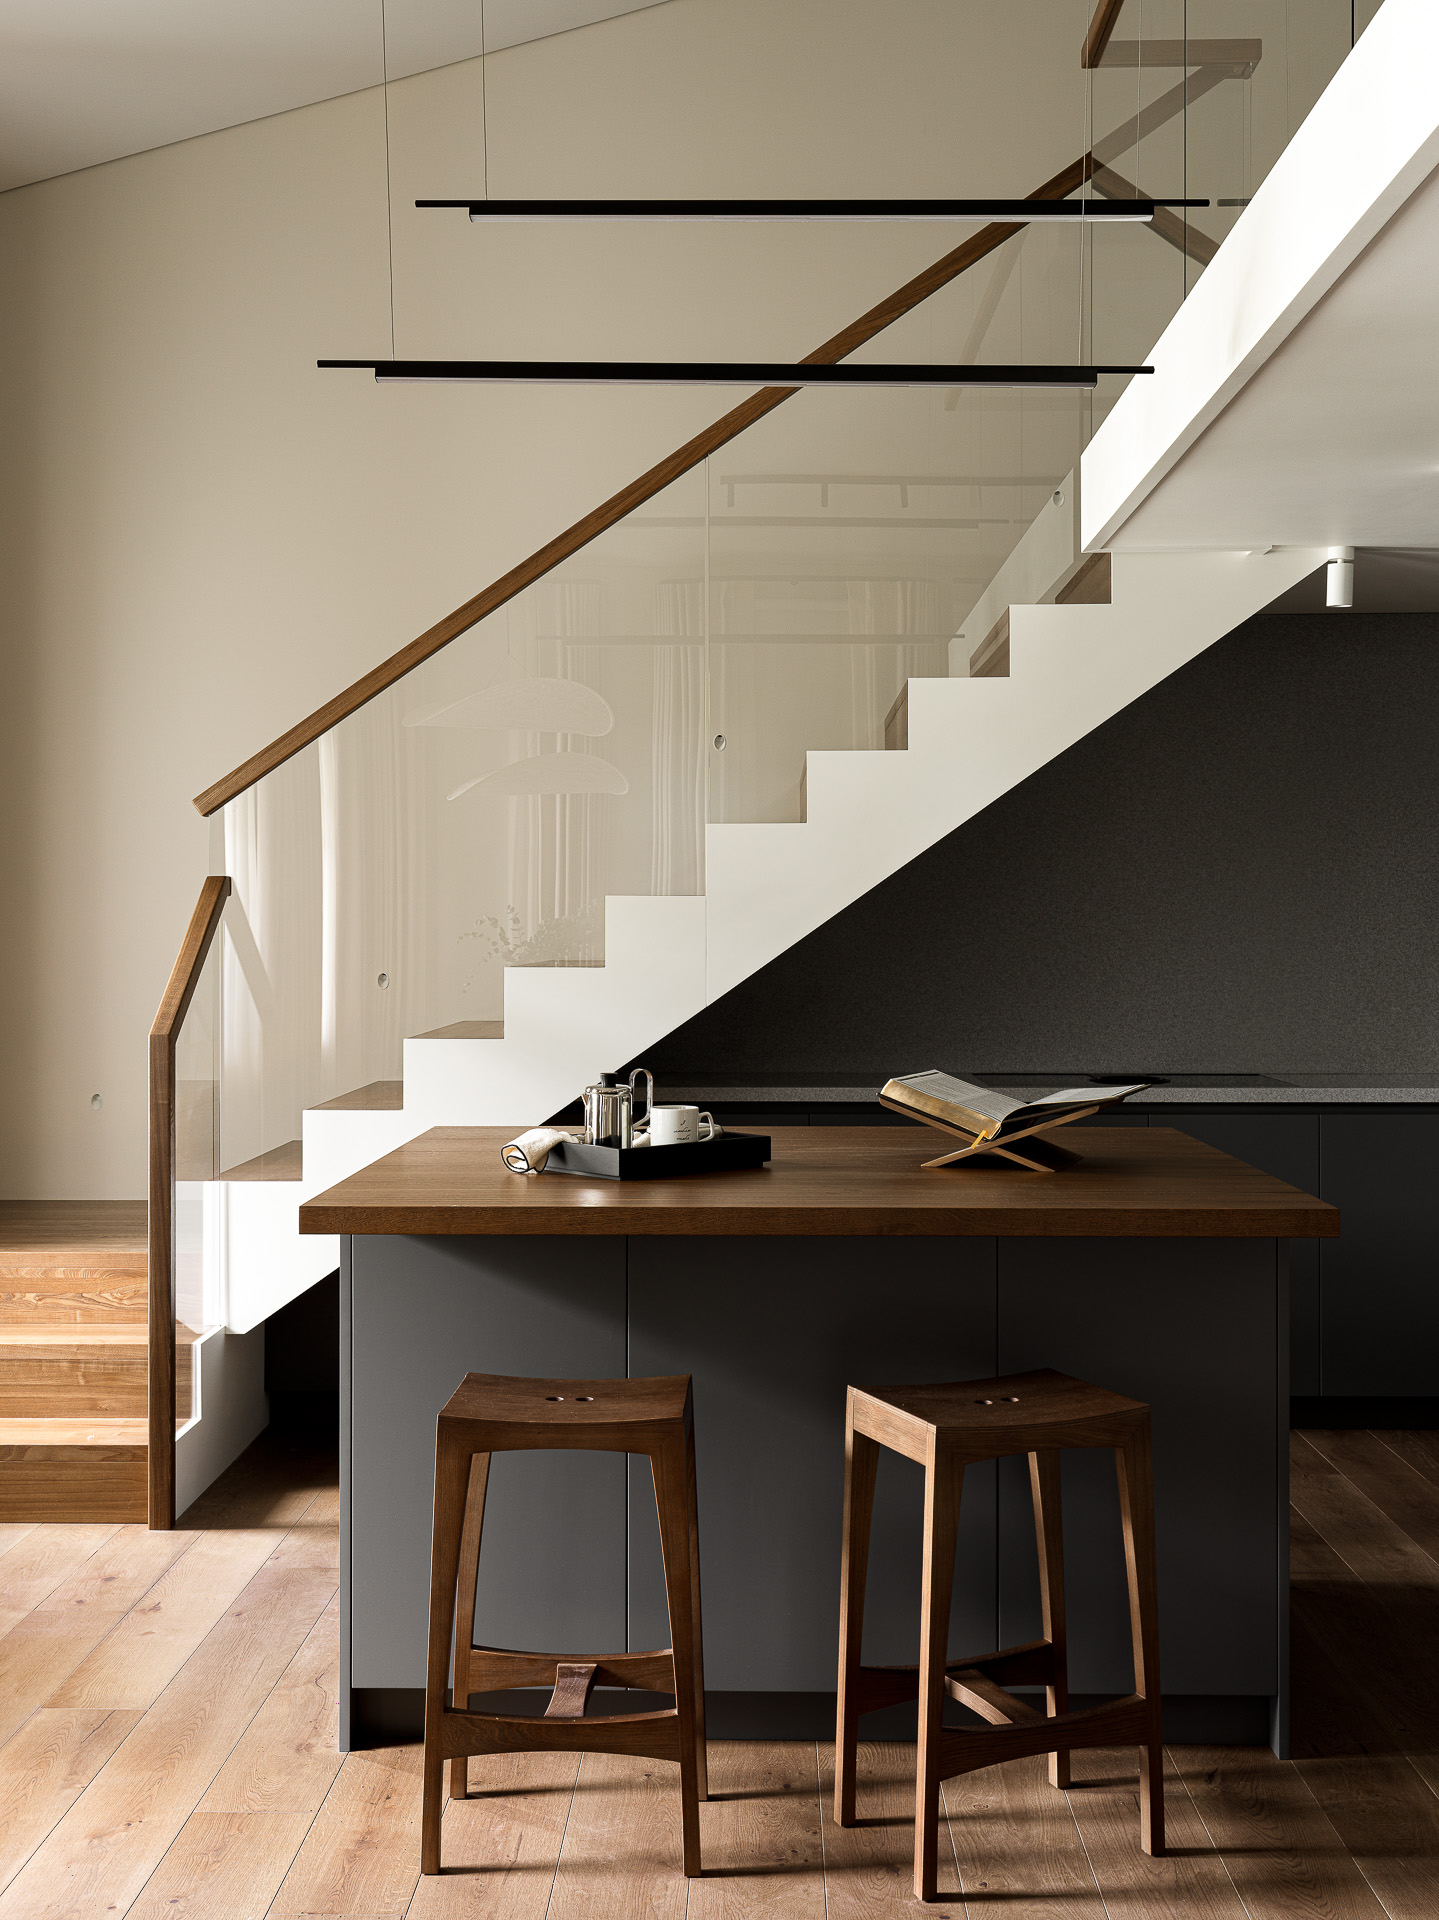 Фото интерьера, Проект лестница в современной квартире - Квартира на крестовском острове, Автор проекта: Дизайнеры Анастасия 